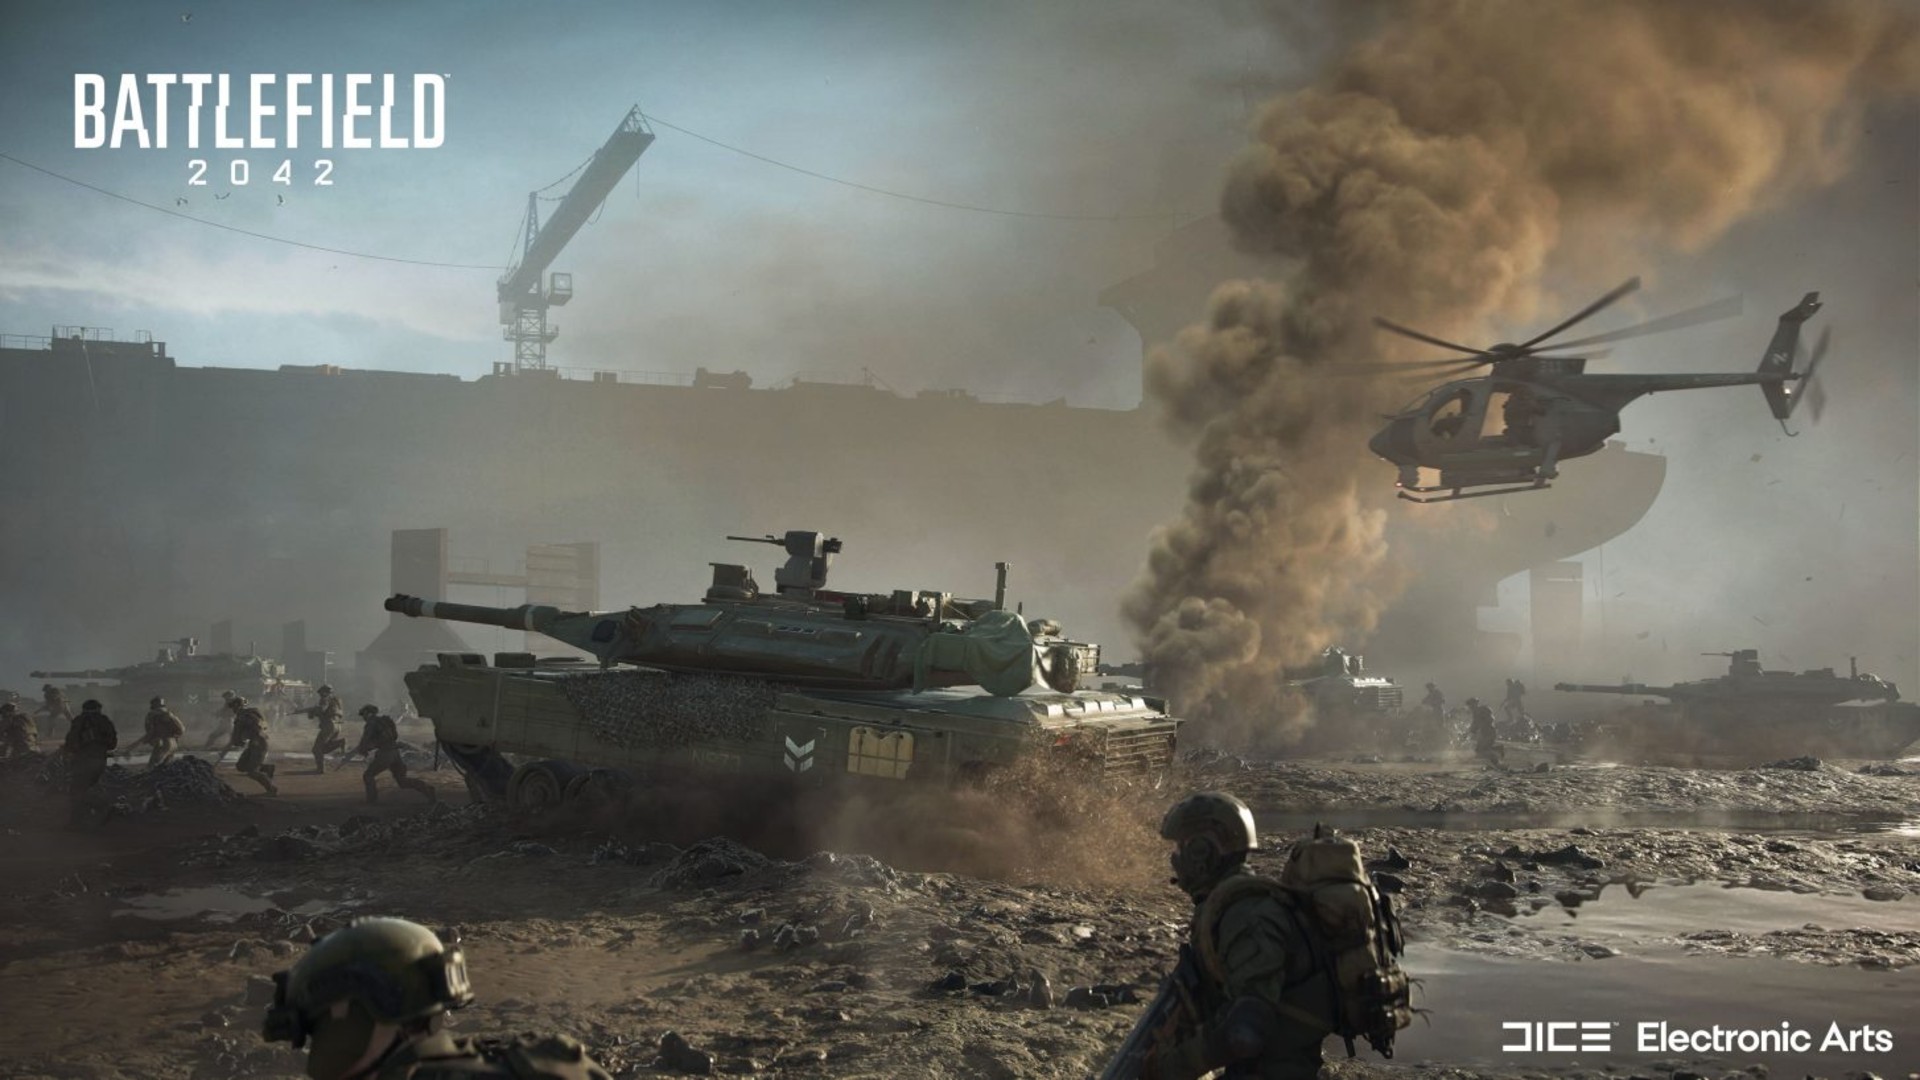 มีความเป็นไปได้ในอนาคต ที่จะเห็น Battlefield เป็นเกมฟรี